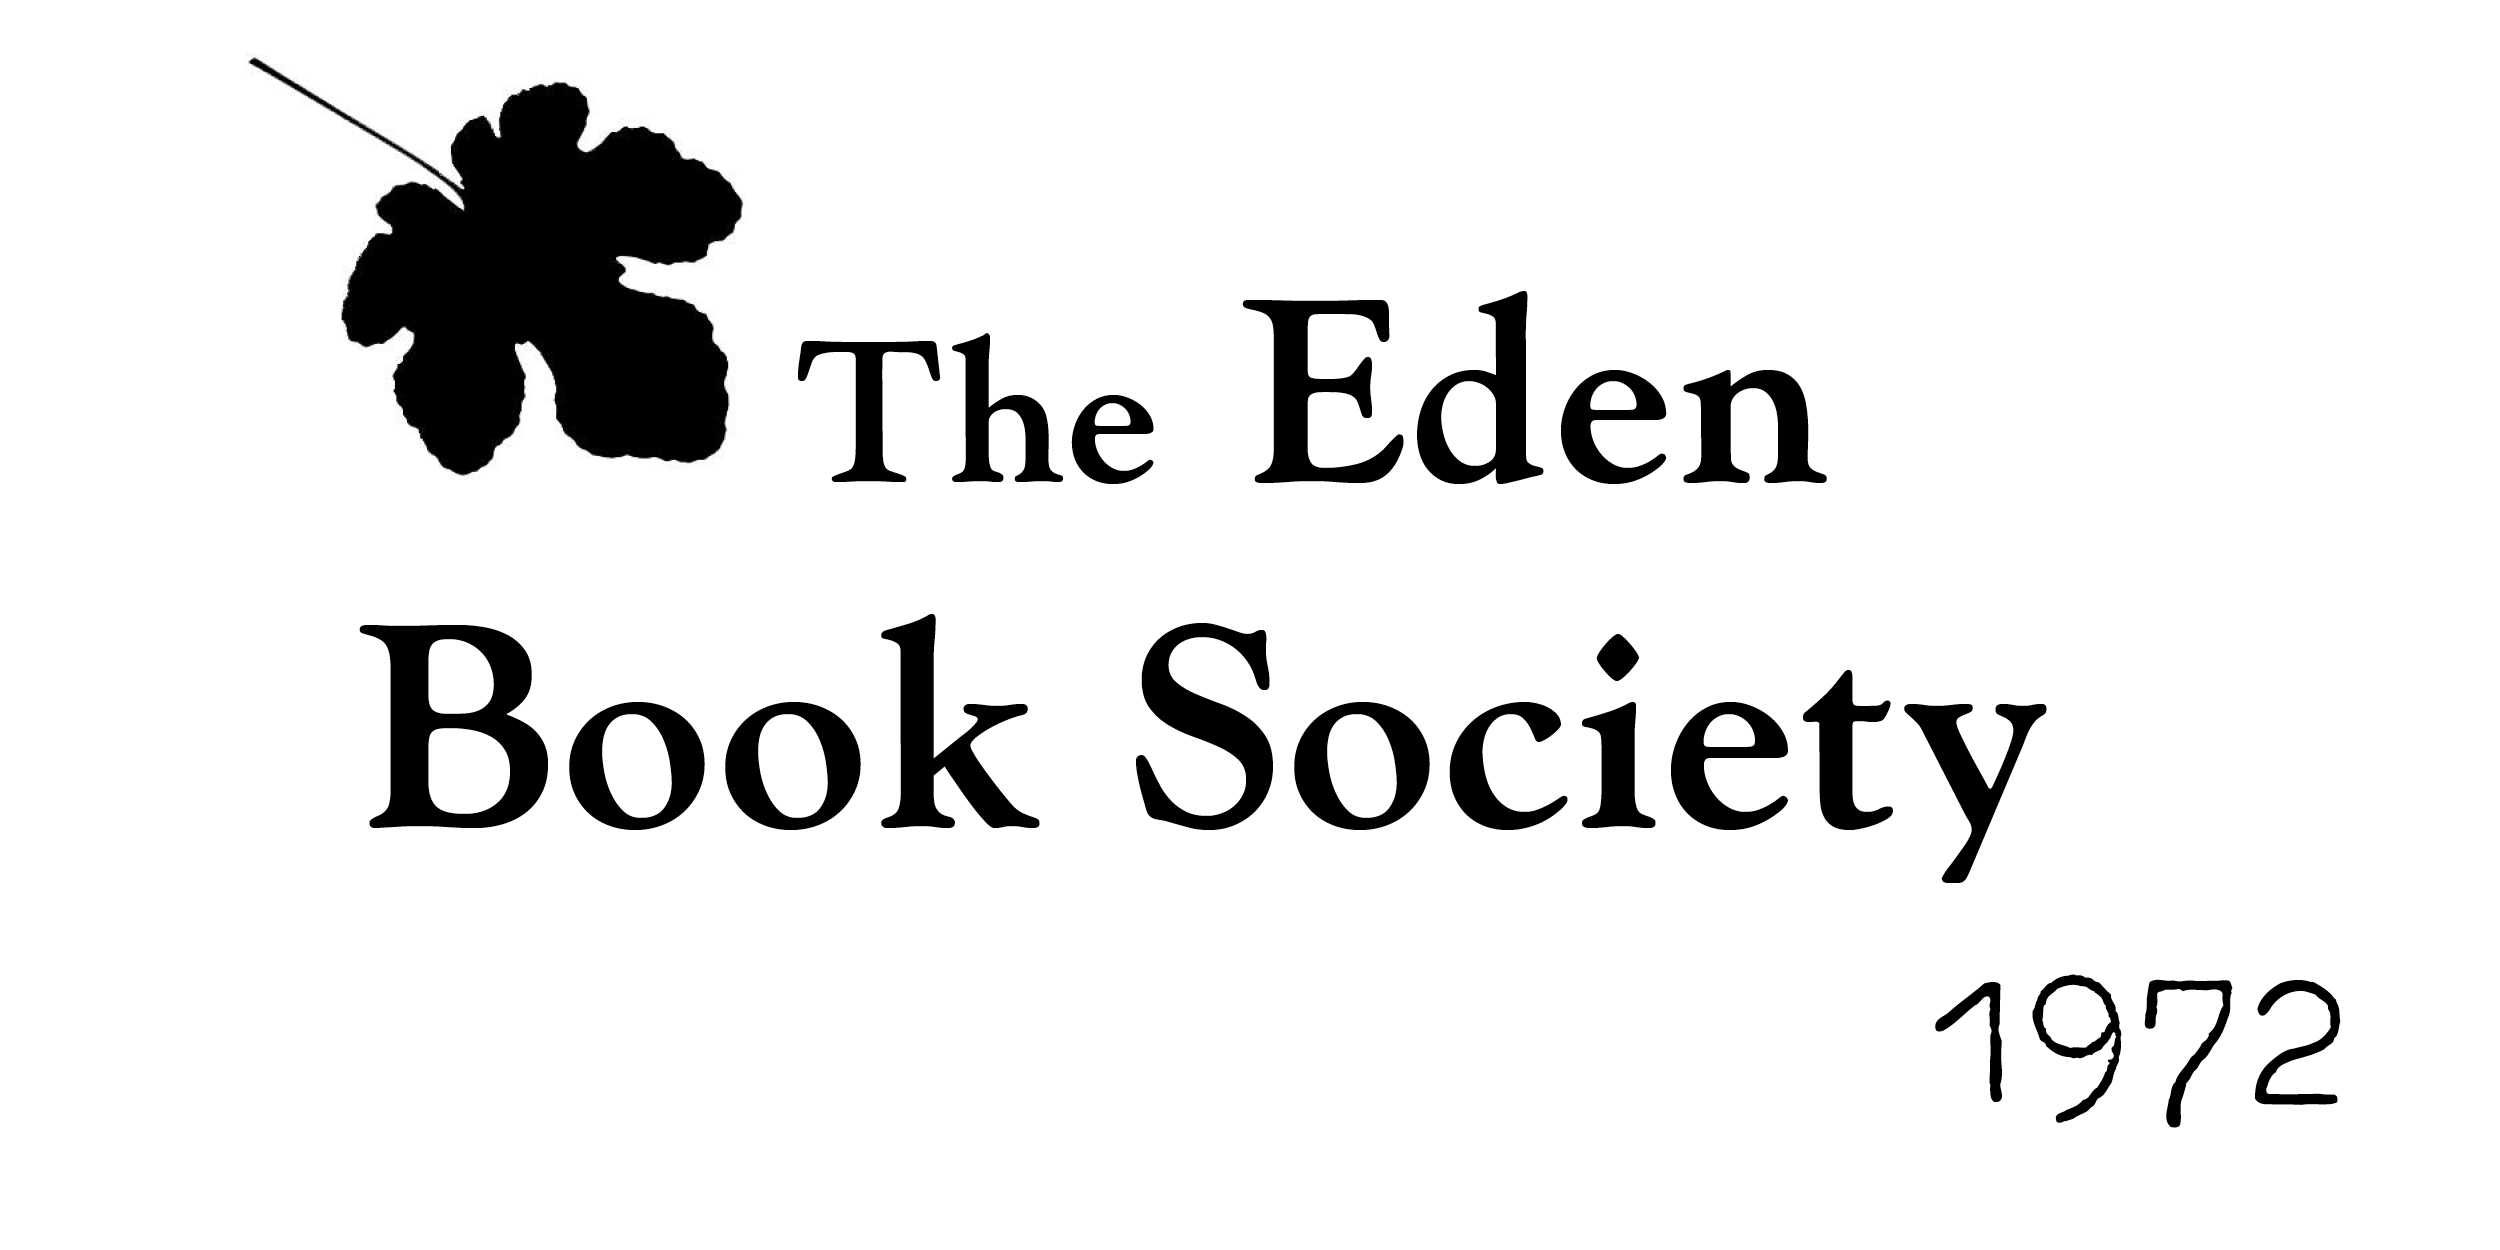 The Eden Book Society